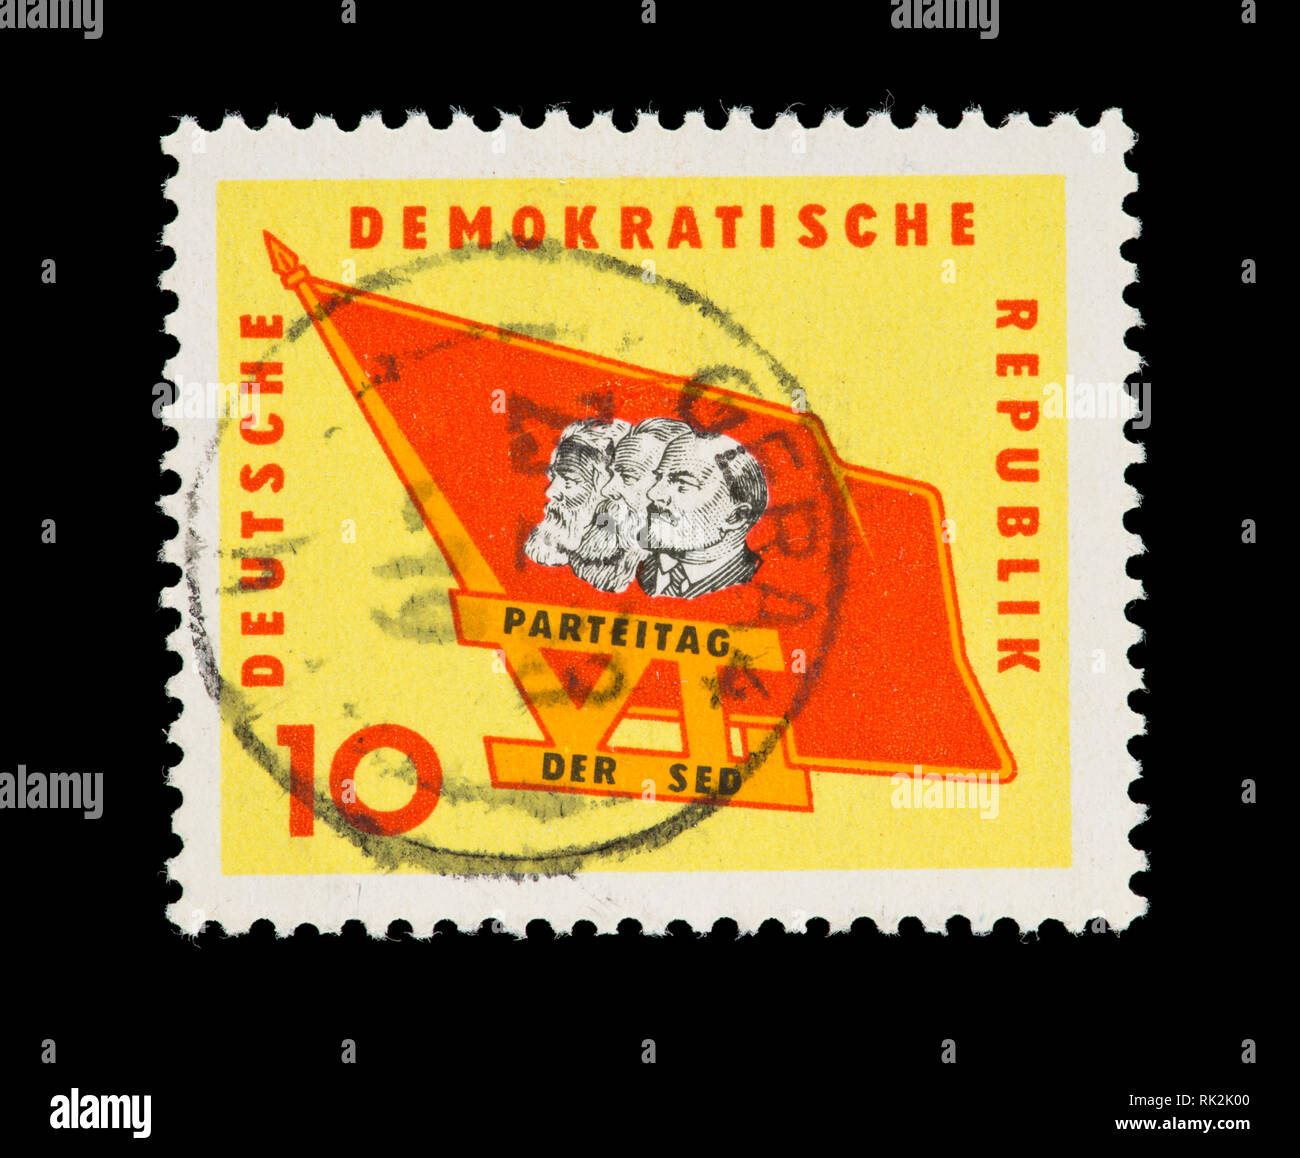 Sello de Alemania del Este (DDR) que describía Marx, Engels y Lenin, expedido por el VI Congreso del Partido de la Unidad Socialista de Alemania. Foto de stock